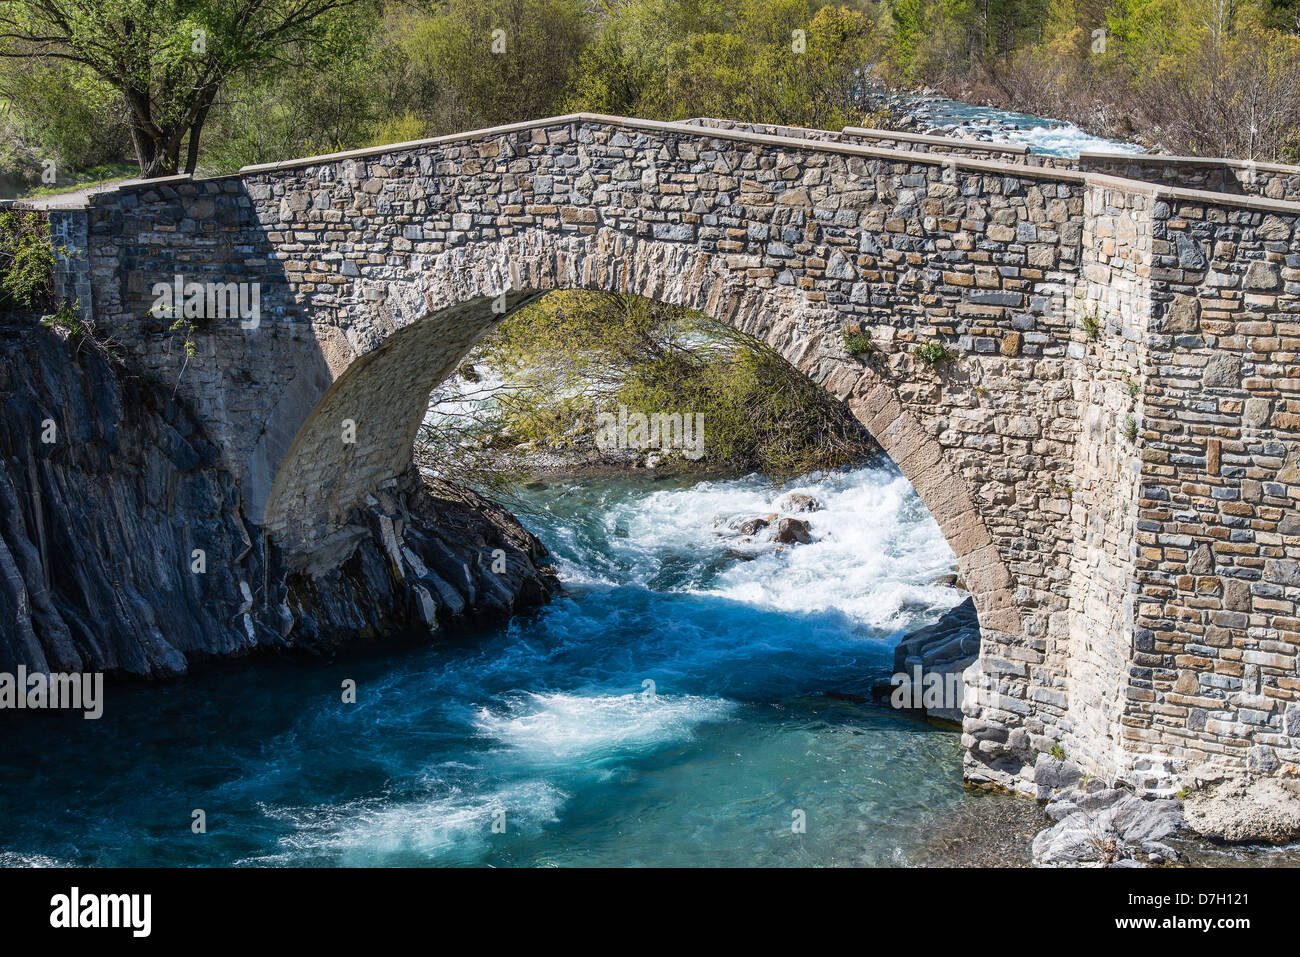 The Puente de la Glera arch stone bridge over Ara River, Torla, Huesca, Aragon, Spain Stock Photo